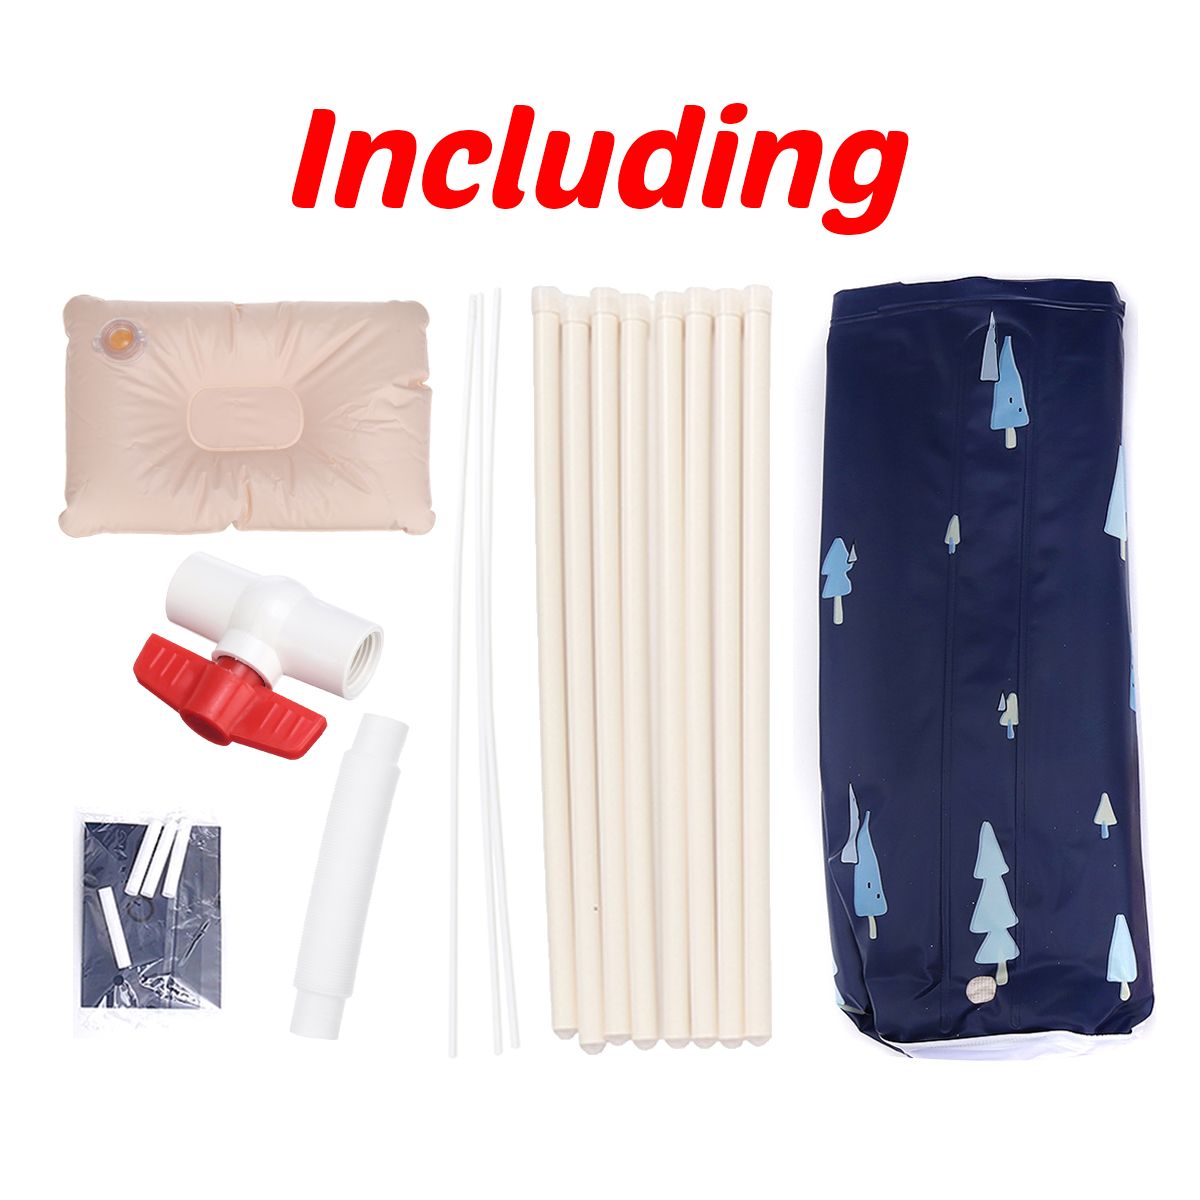 70x70cm-PVC-Folding-Bathtub-Portable-Foldable-Water-Tub-Place-Room-Adult-Spa-Bath-Tub-1756234